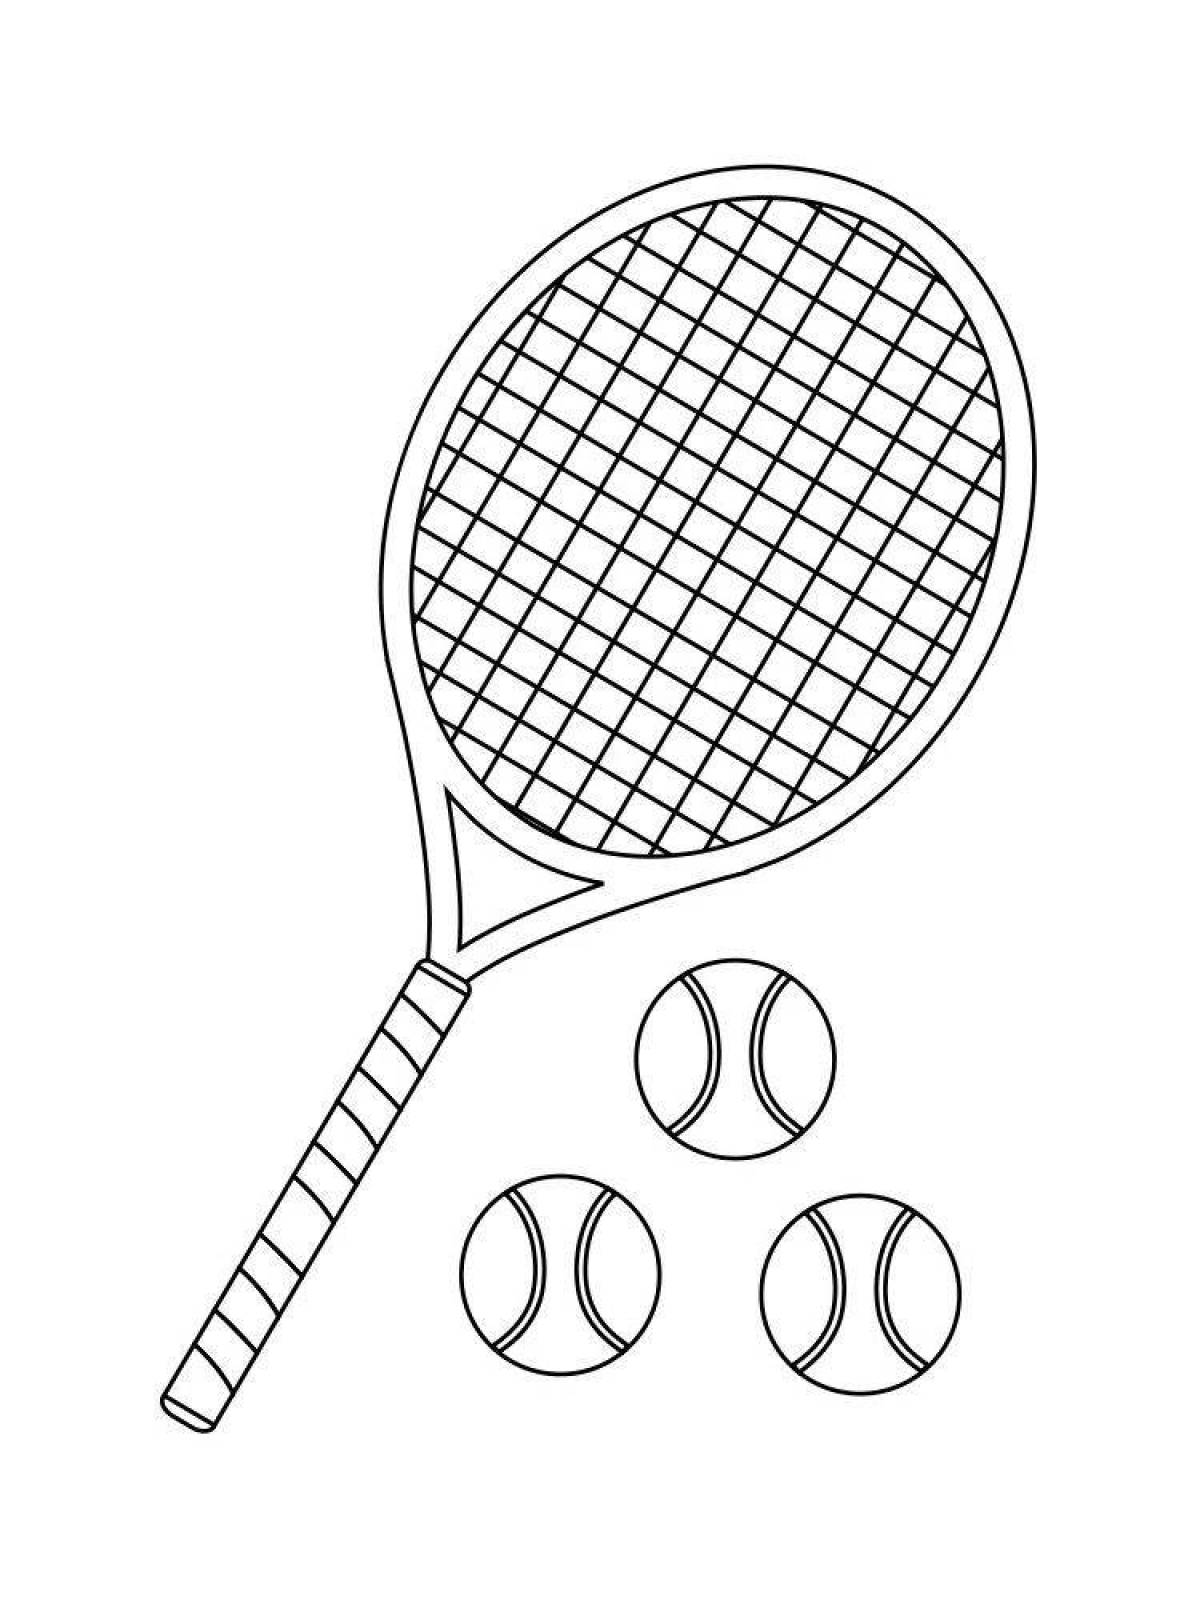 Теннисная ракетка раскраска для детей